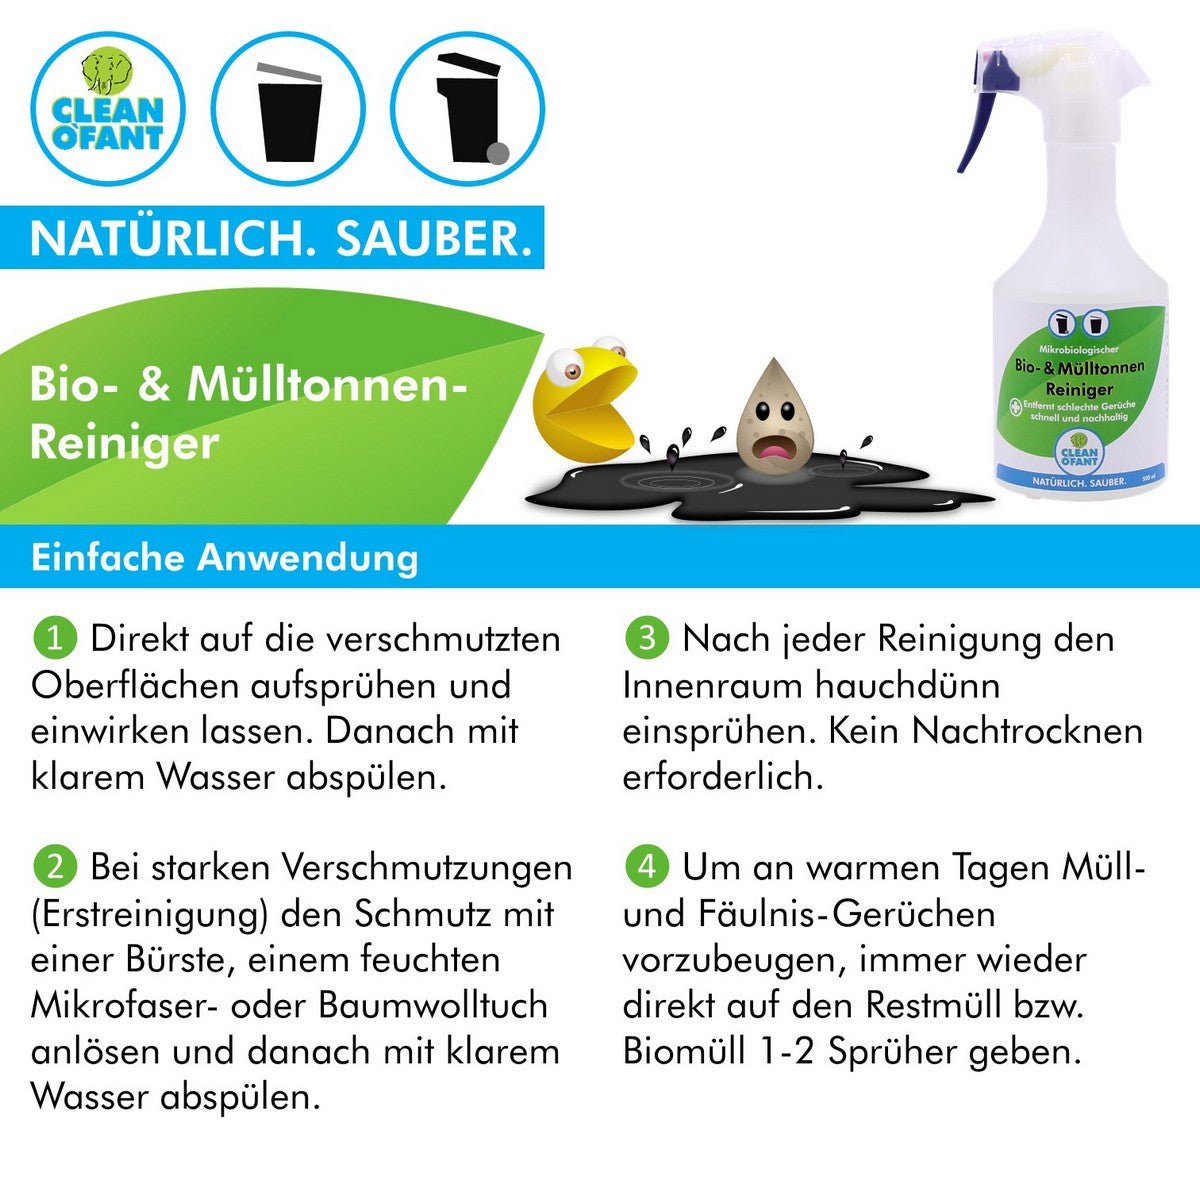 Bio- & Mülltonnen-Reiniger - mikrobiologisch - 500 ml - CLEANOFANT